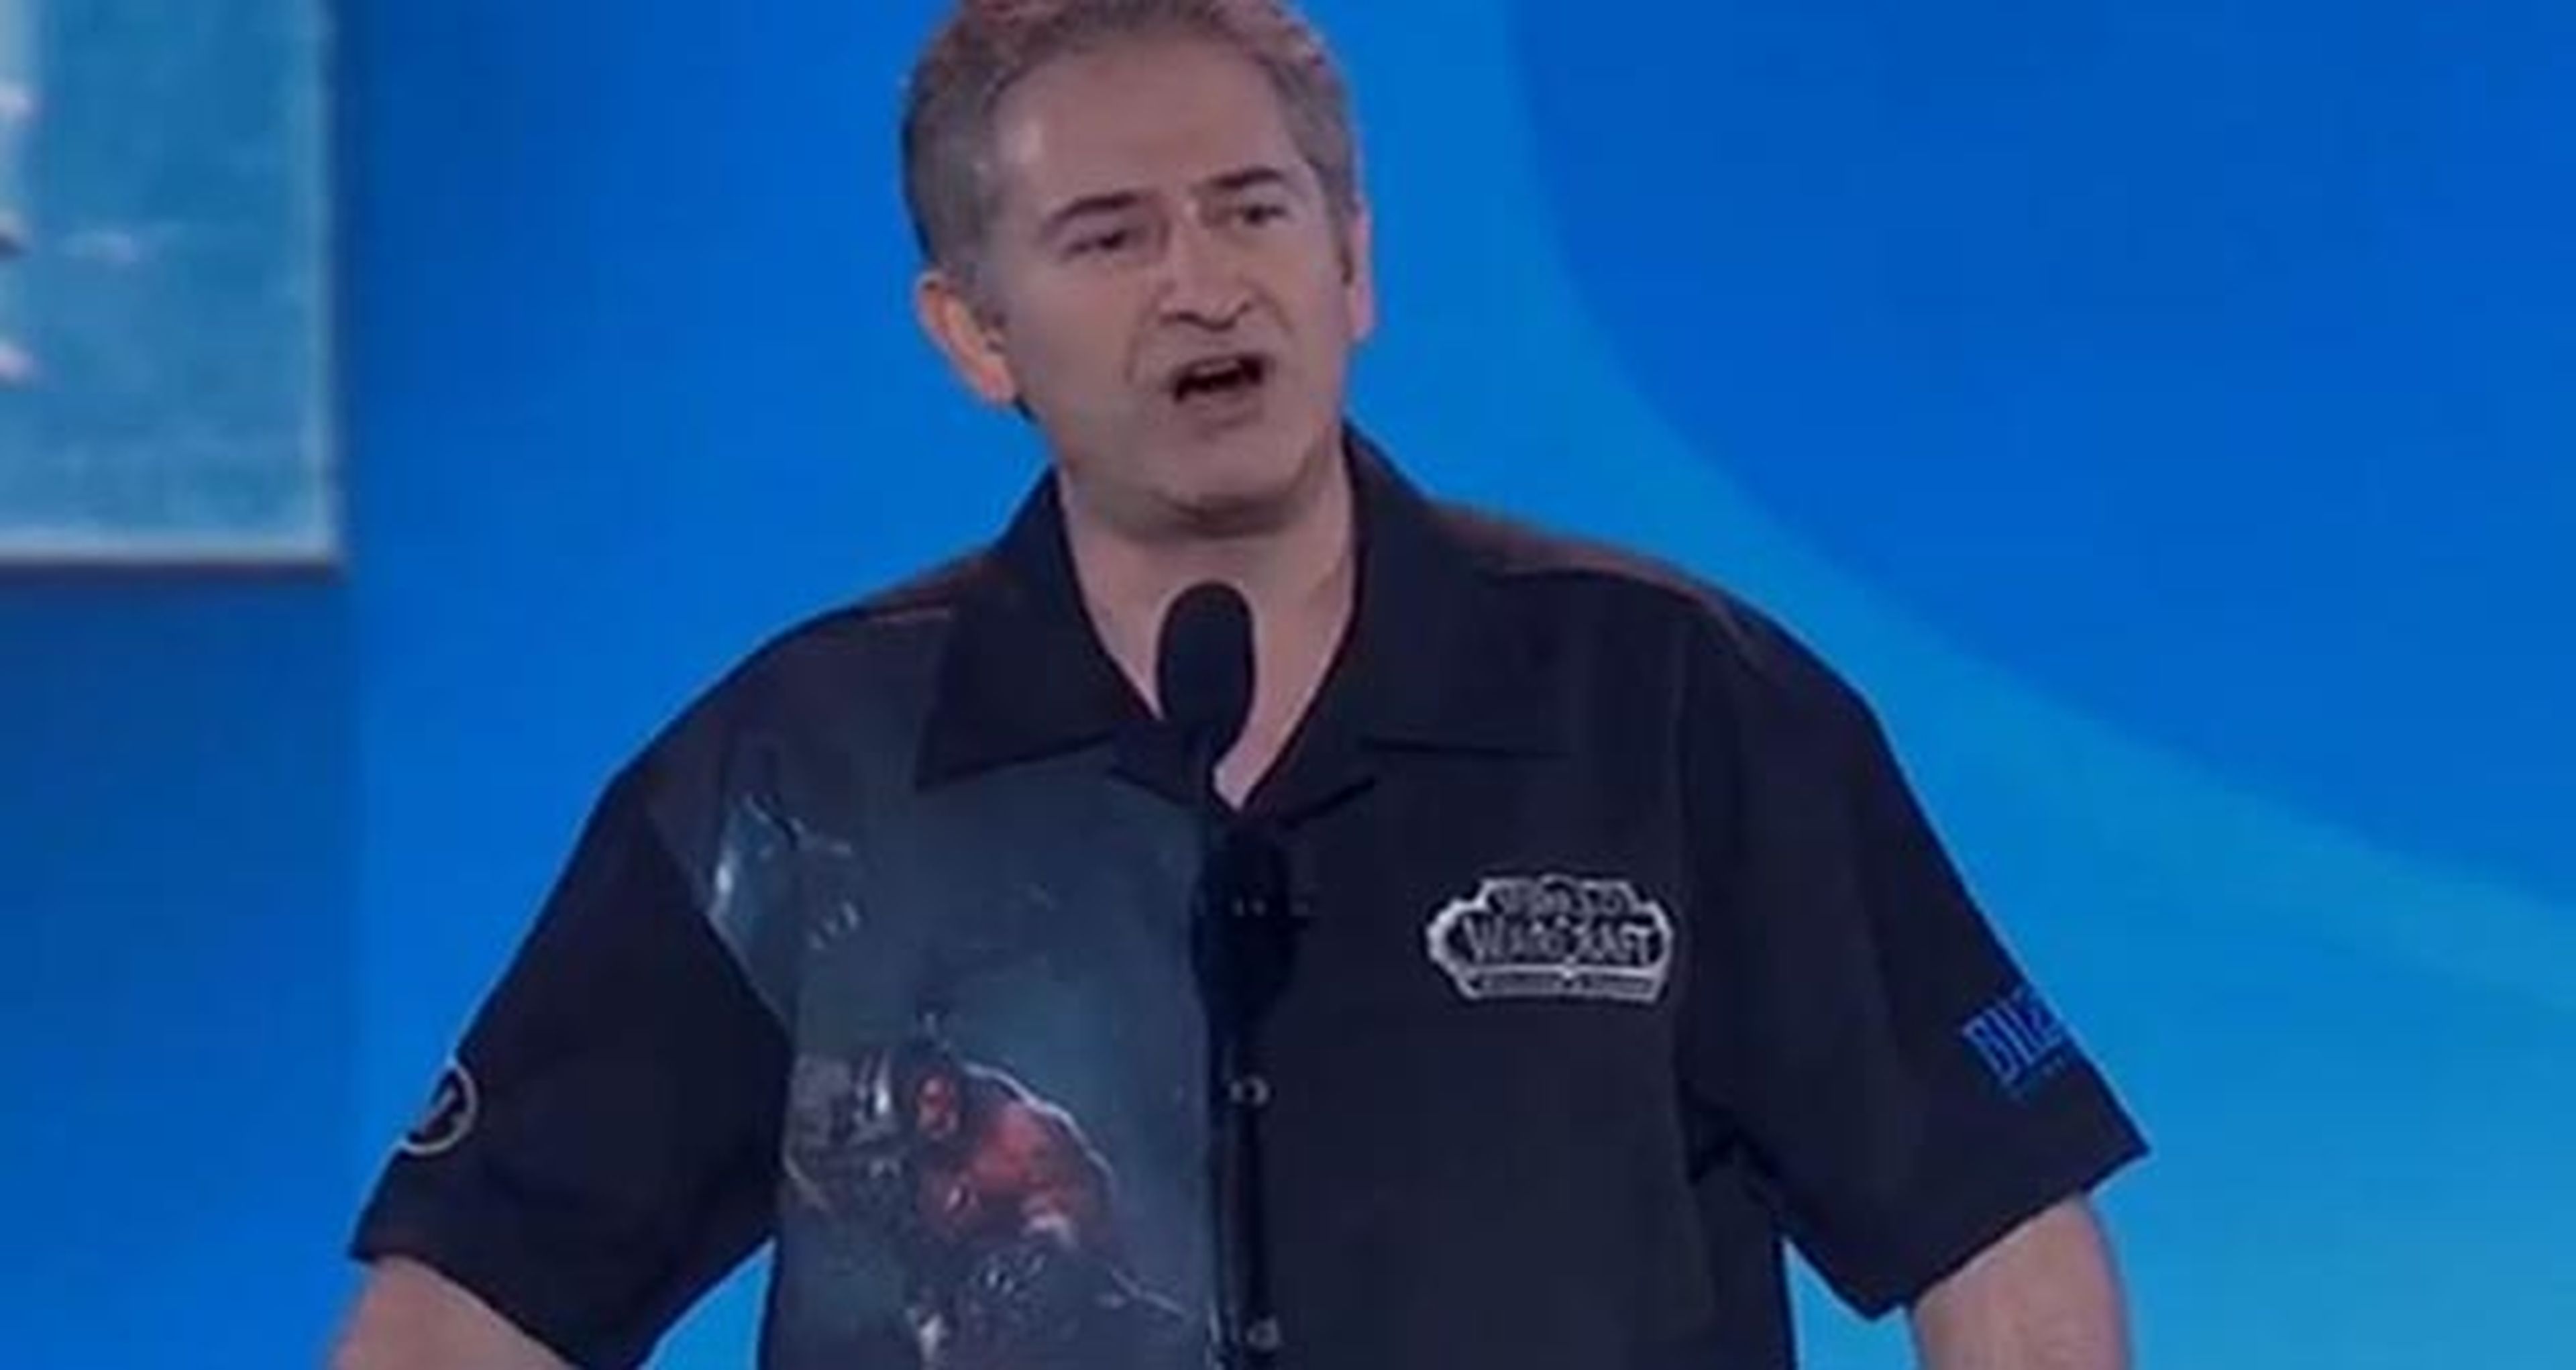 Blizzcon 2014: El CEO de Blizzard rechaza el odio y el acoso en la industria del videojuego